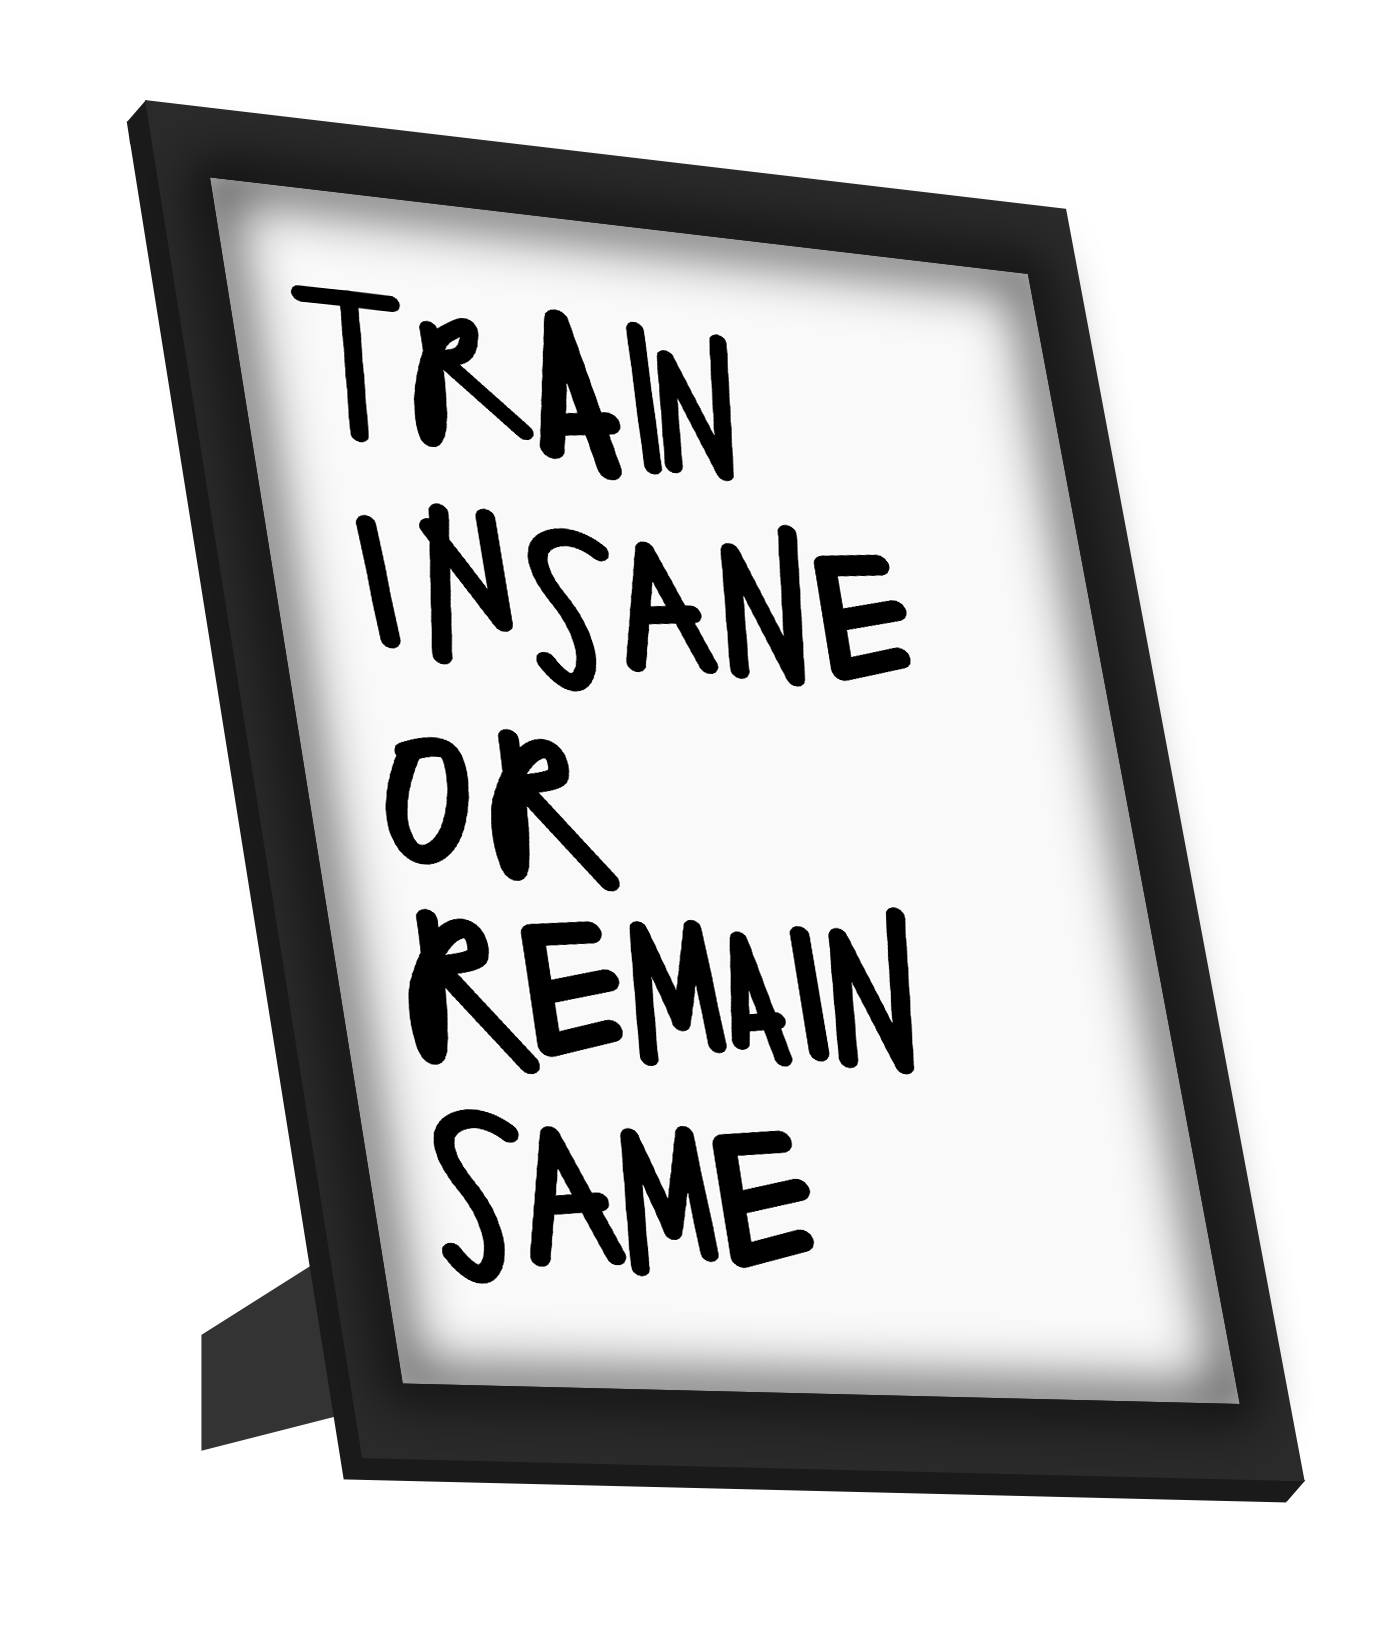 Framed Art, Train Insane | Gym Workout Framed Art, - PosterGully